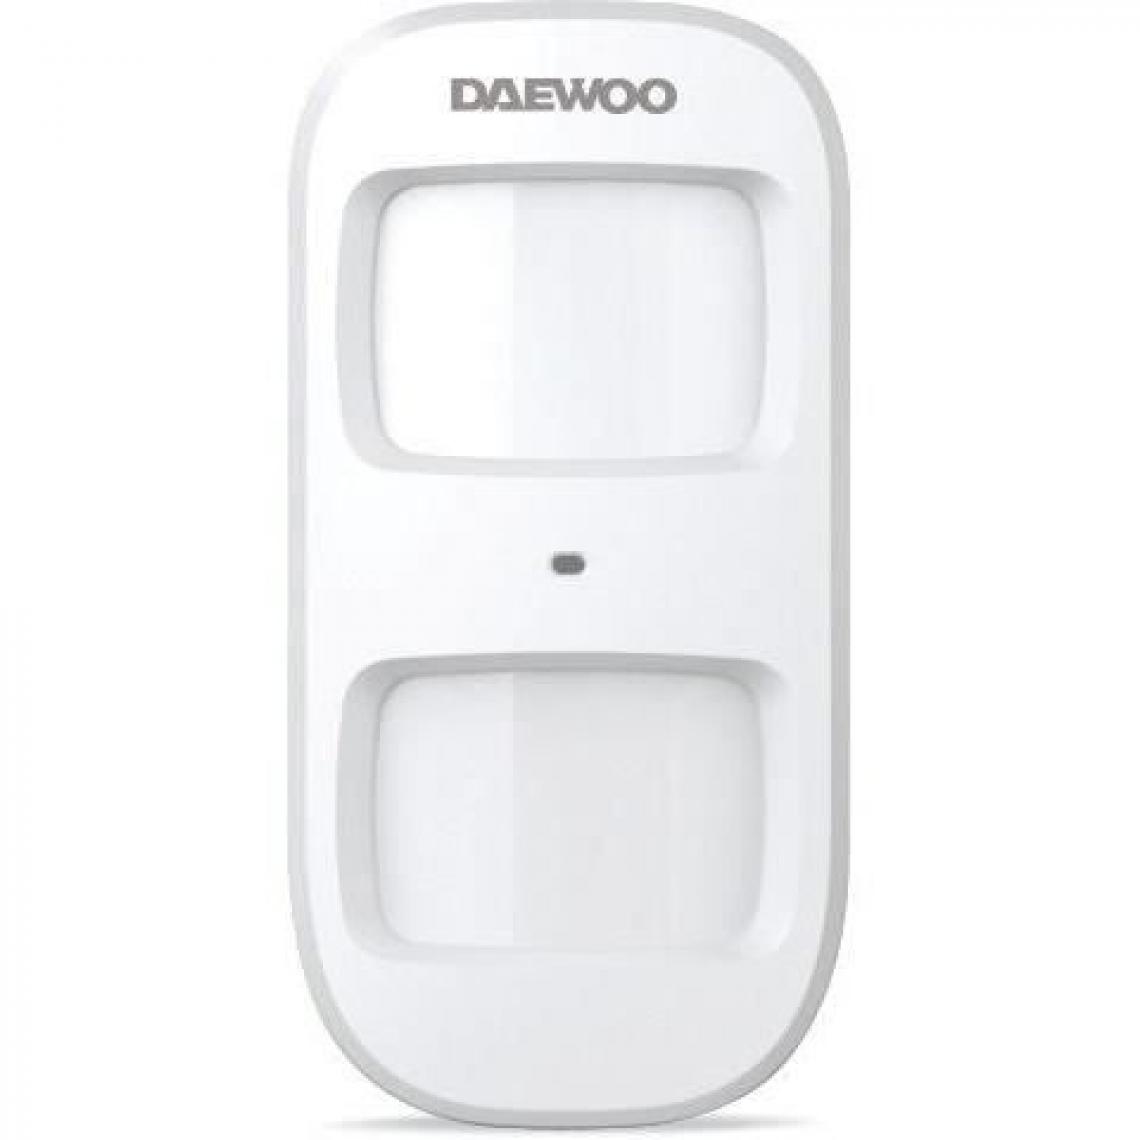 Daewoo - DAEWOO Détecteur de mouvement Pet immune WPS501 pour systeme d'alarme SA501 - Alarme connectée